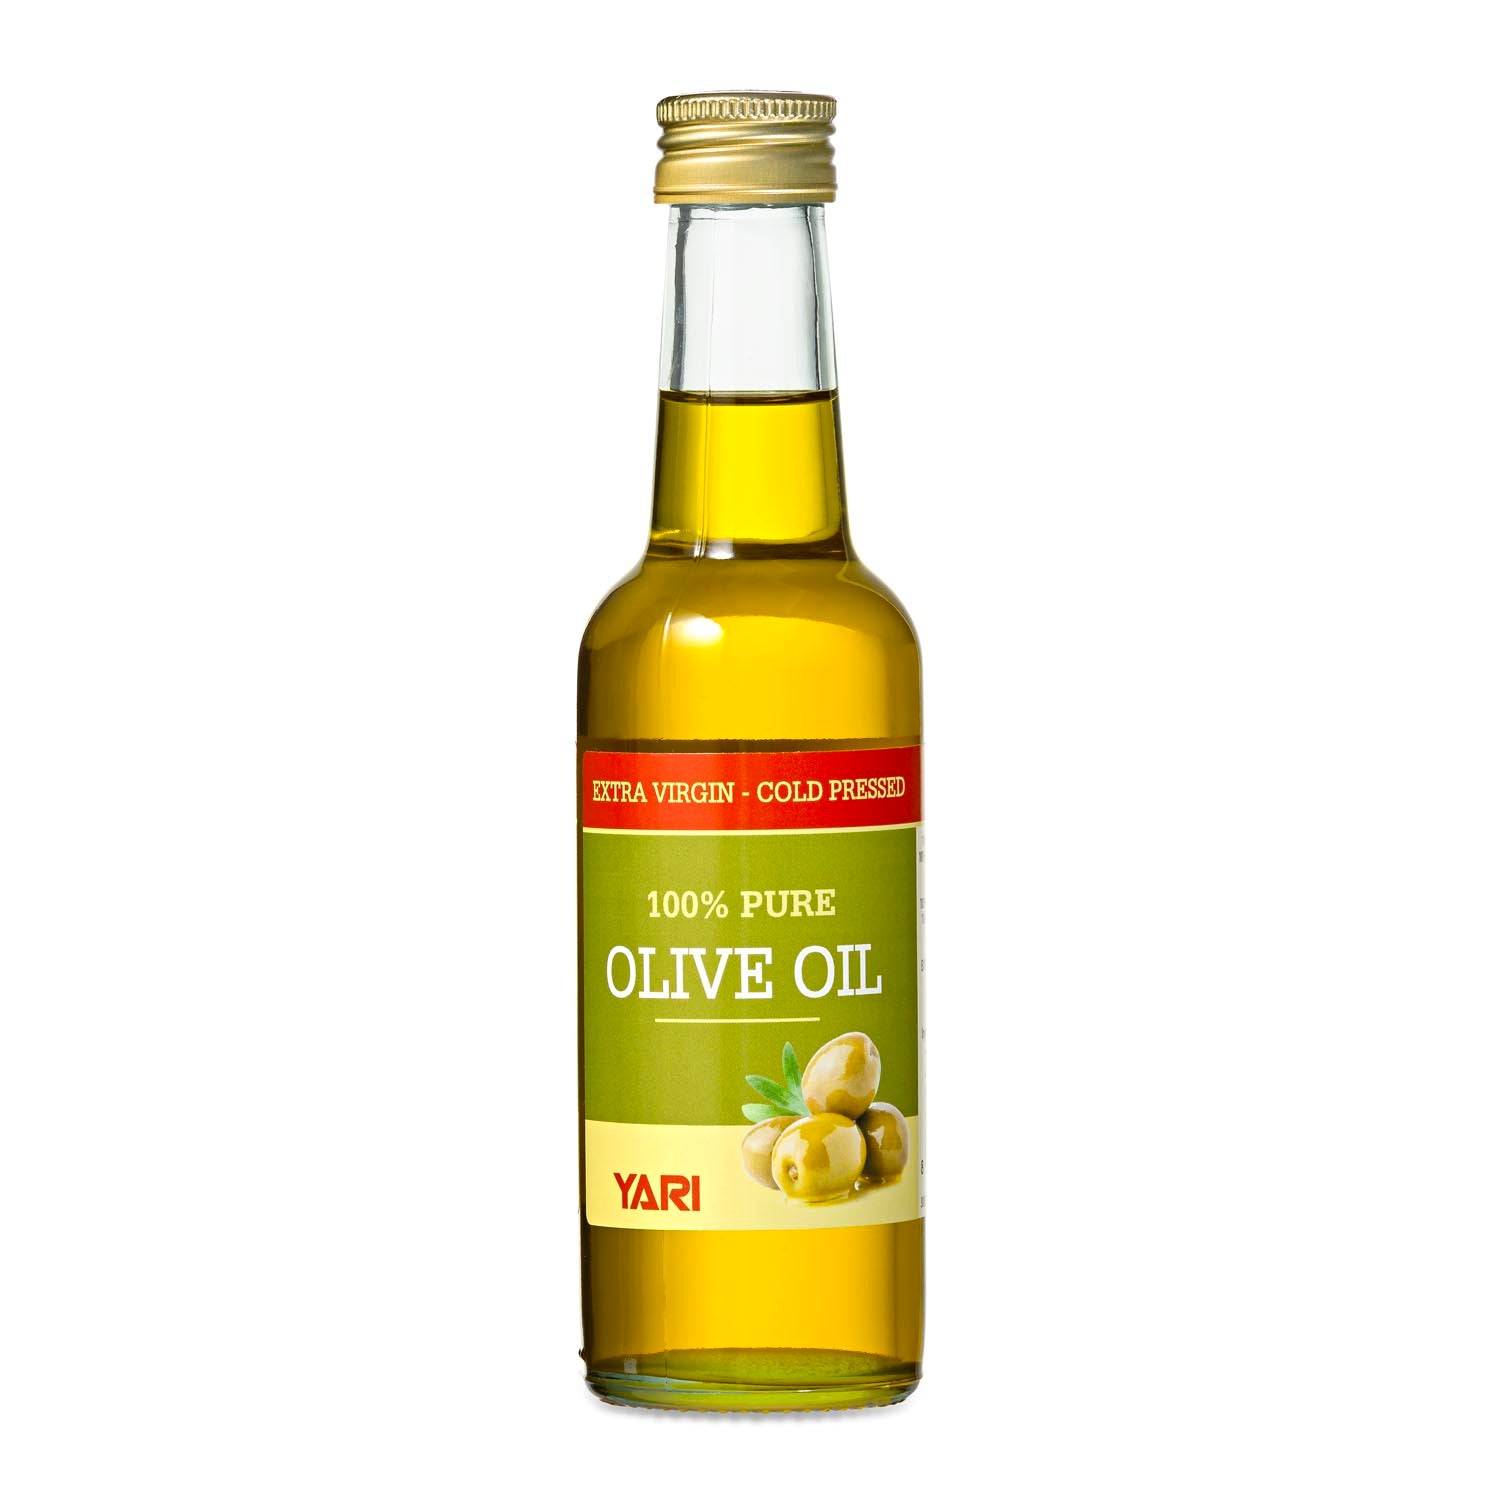 Yari - 100% Pure Olive Oil 250ml